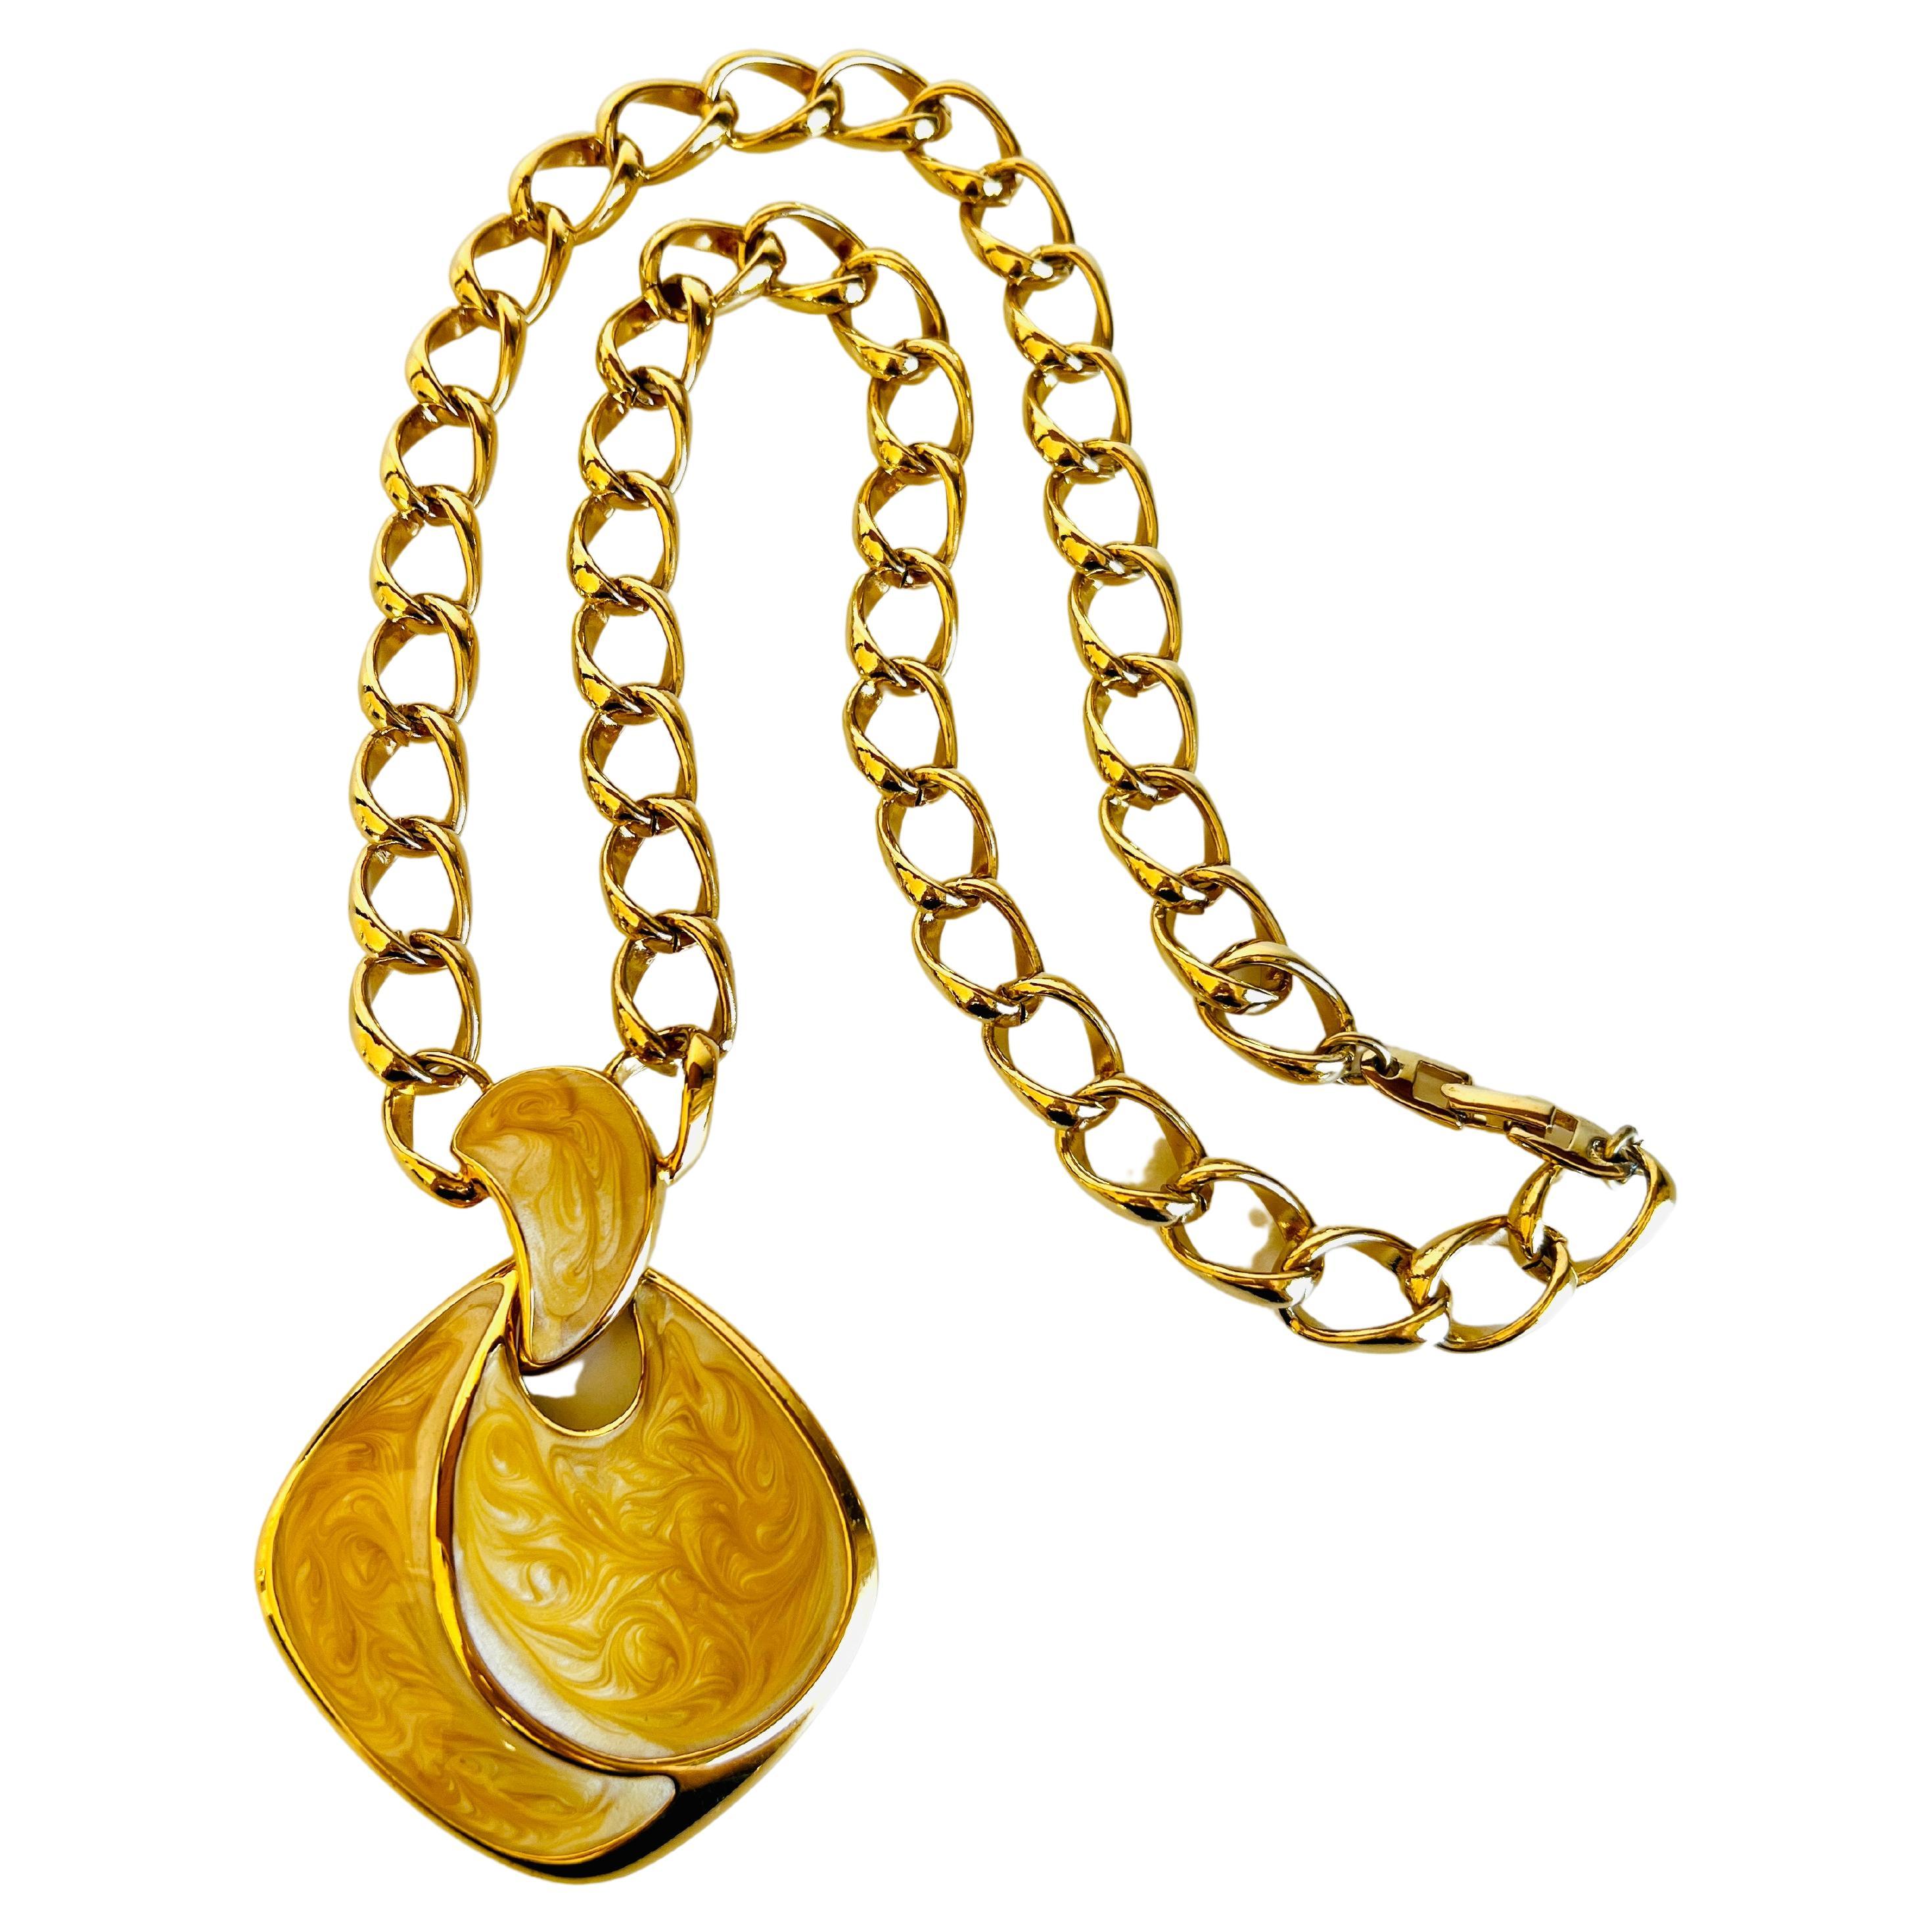 Fabuleux collier à chaîne en or orné d'un grand pendentif en émail d'or jaunâtre de Napier. 

Longueur : 24